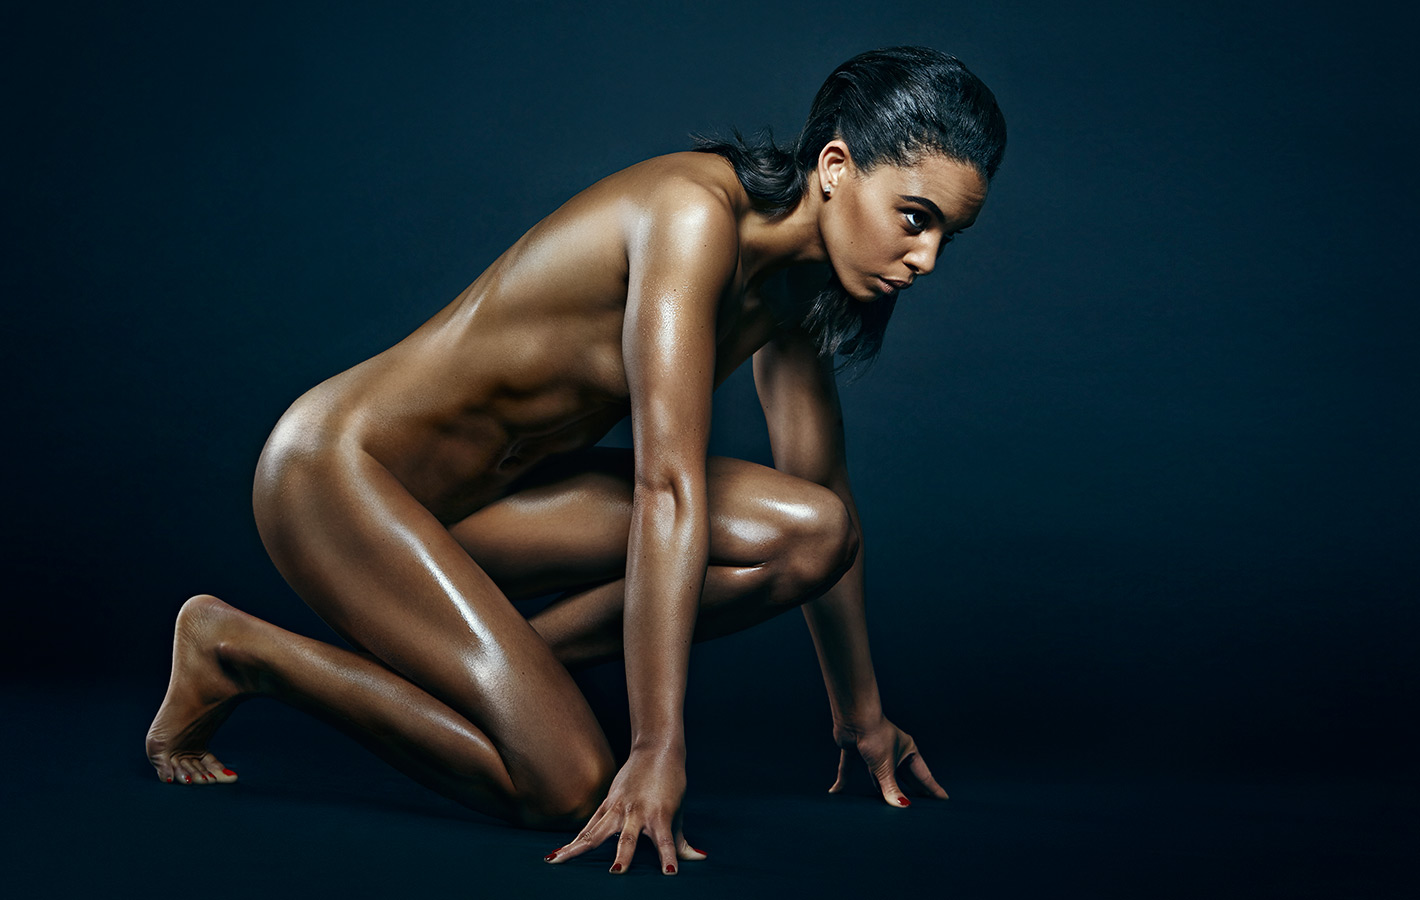 Black female models naked